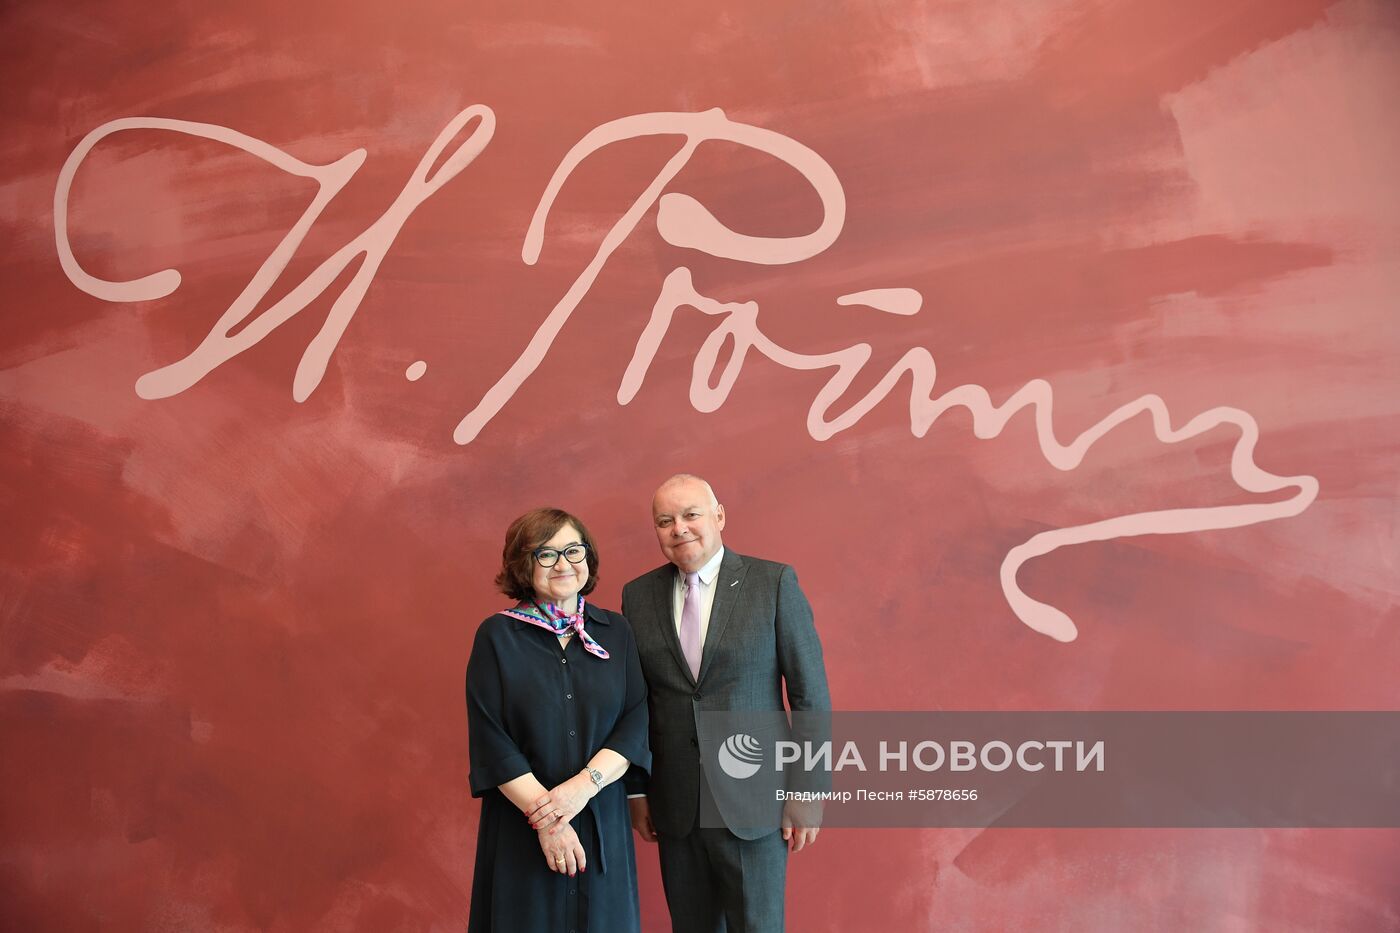 Подписание соглашения между Третьяковской галереей и МИА "Россия сегодня" 